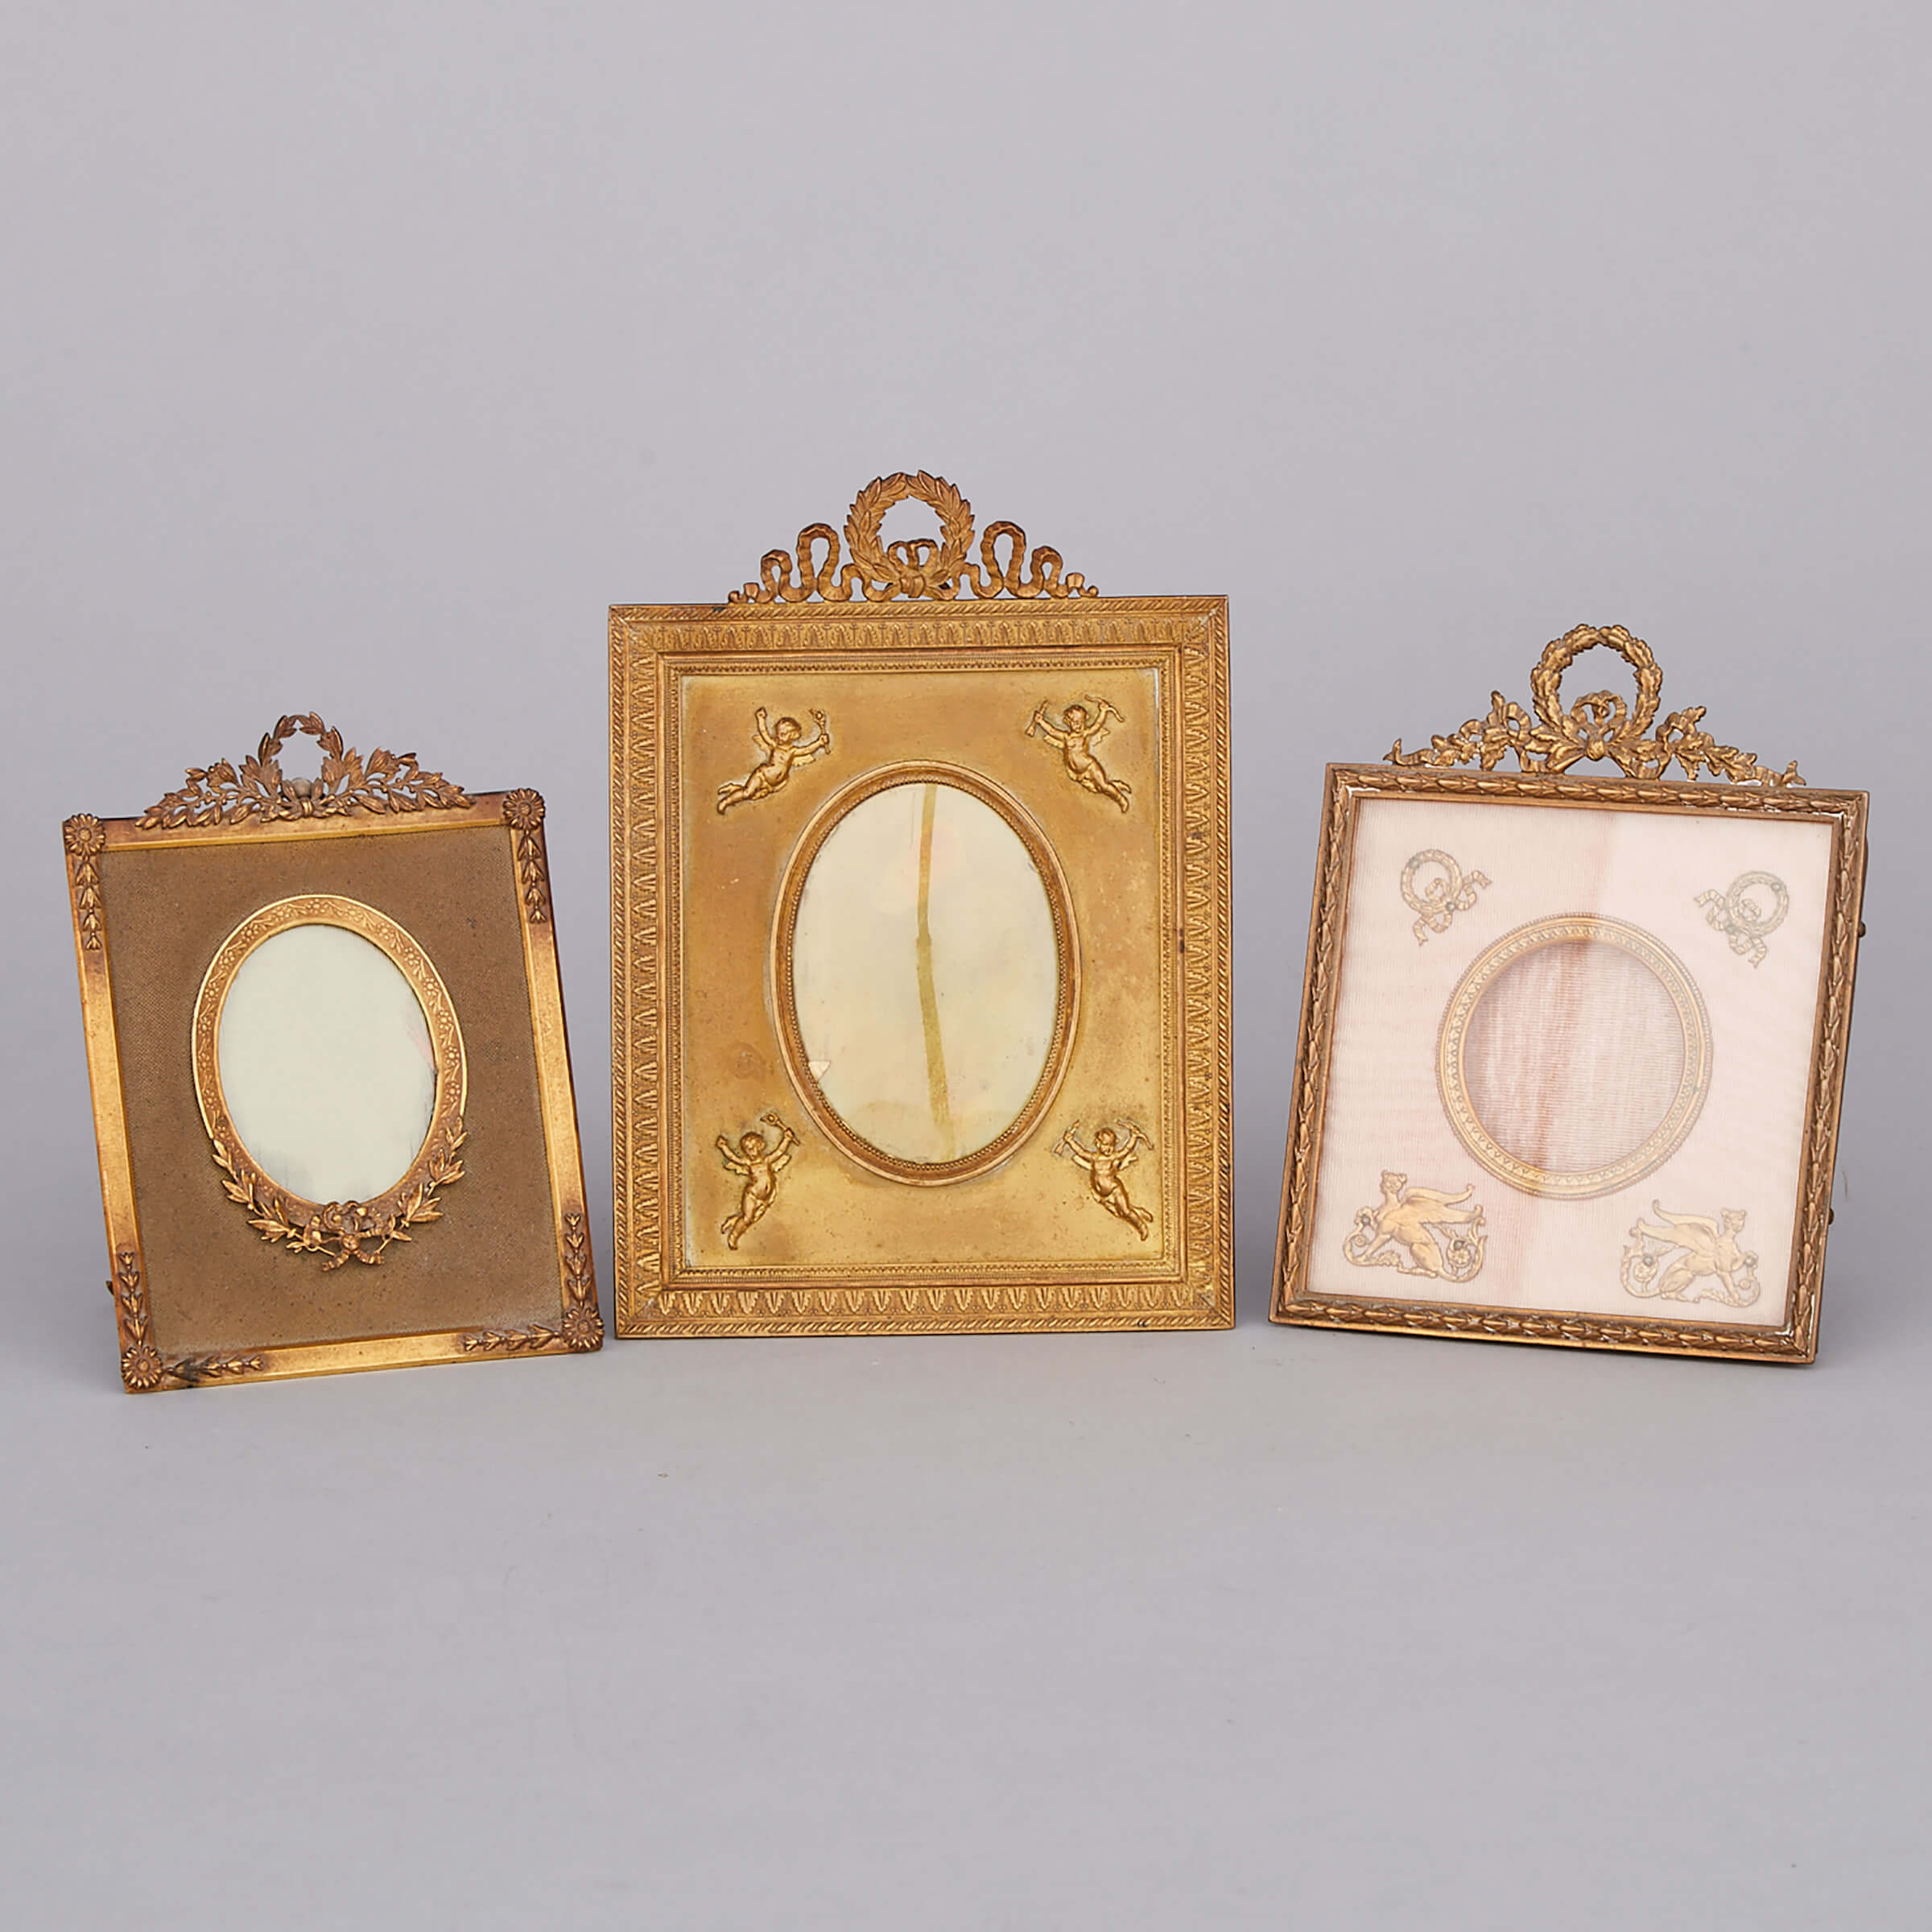 Three French Ormolu Easel Frames, 19th century